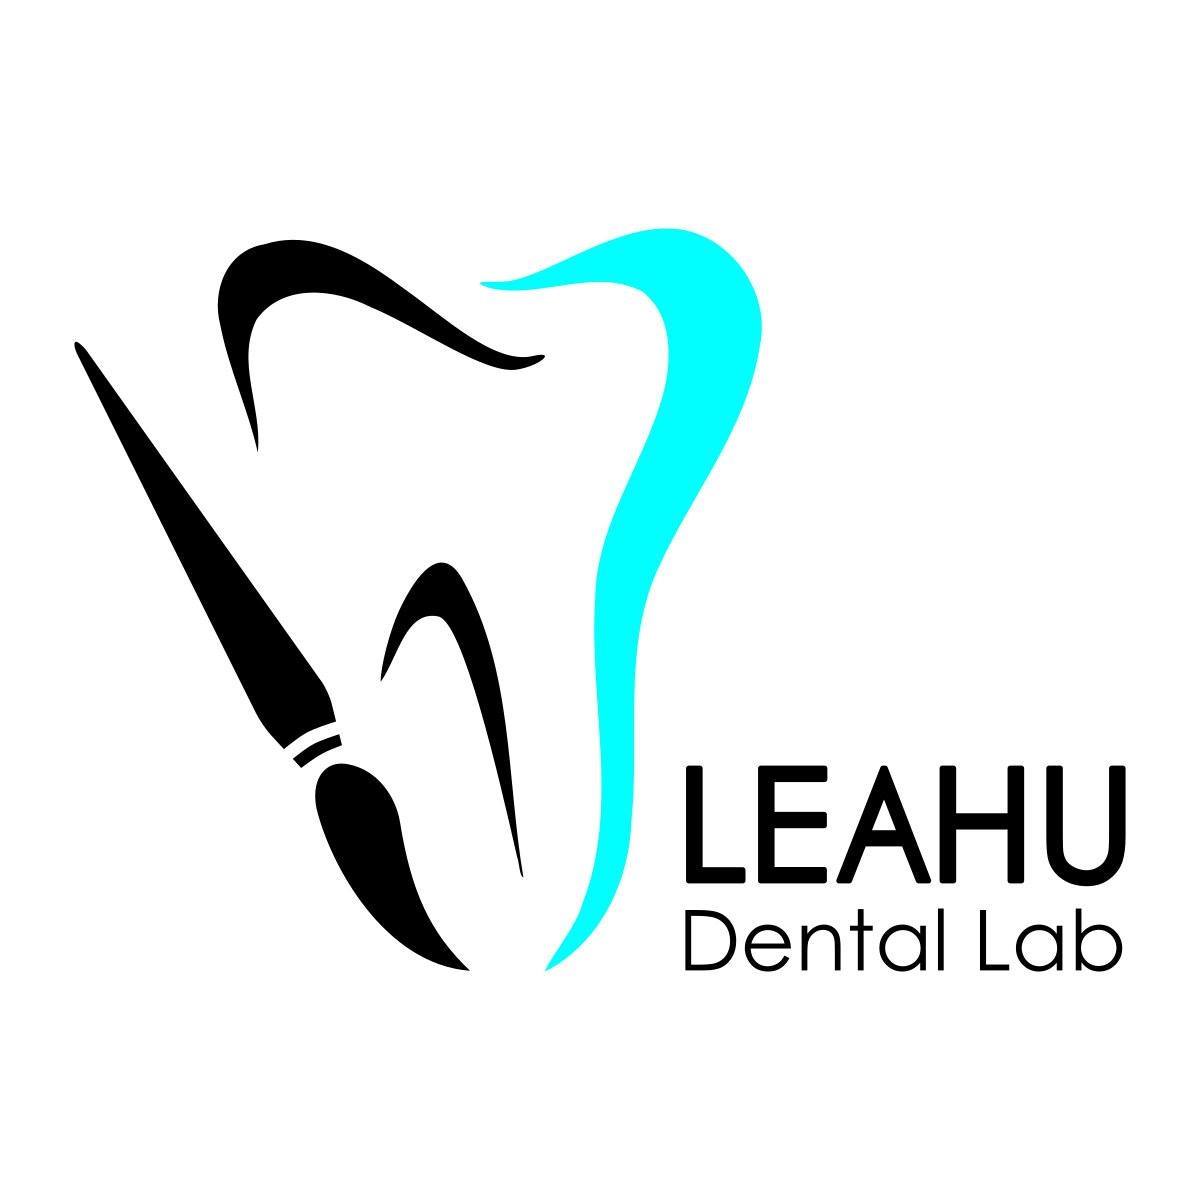 Laborator tehnica dentara bucuresti, Leahu Dental Lab, Tehnician Robert Leahu Bucuresti